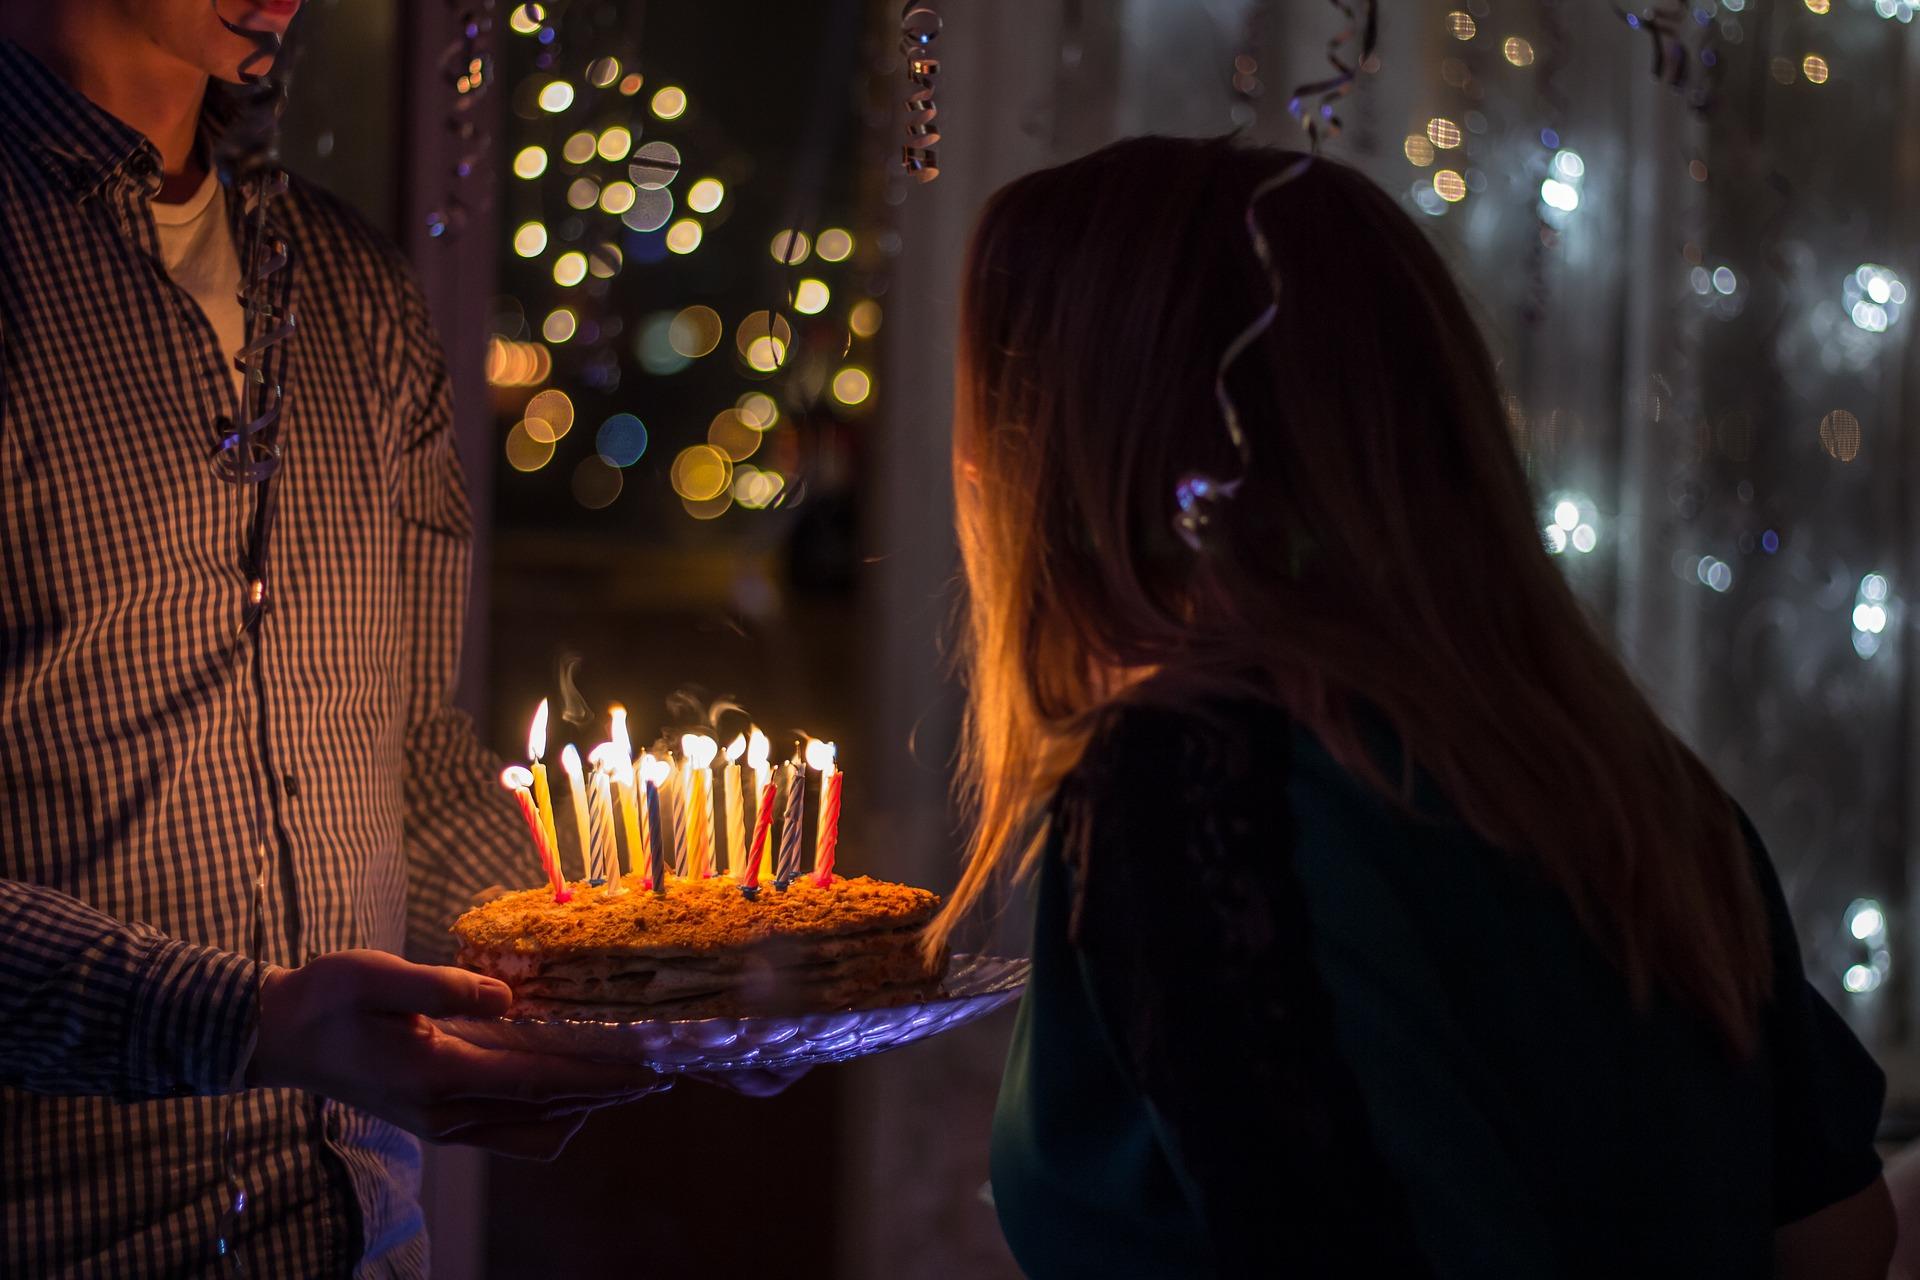 Pourquoi souffle-t-on des bougies à son anniversaire ?